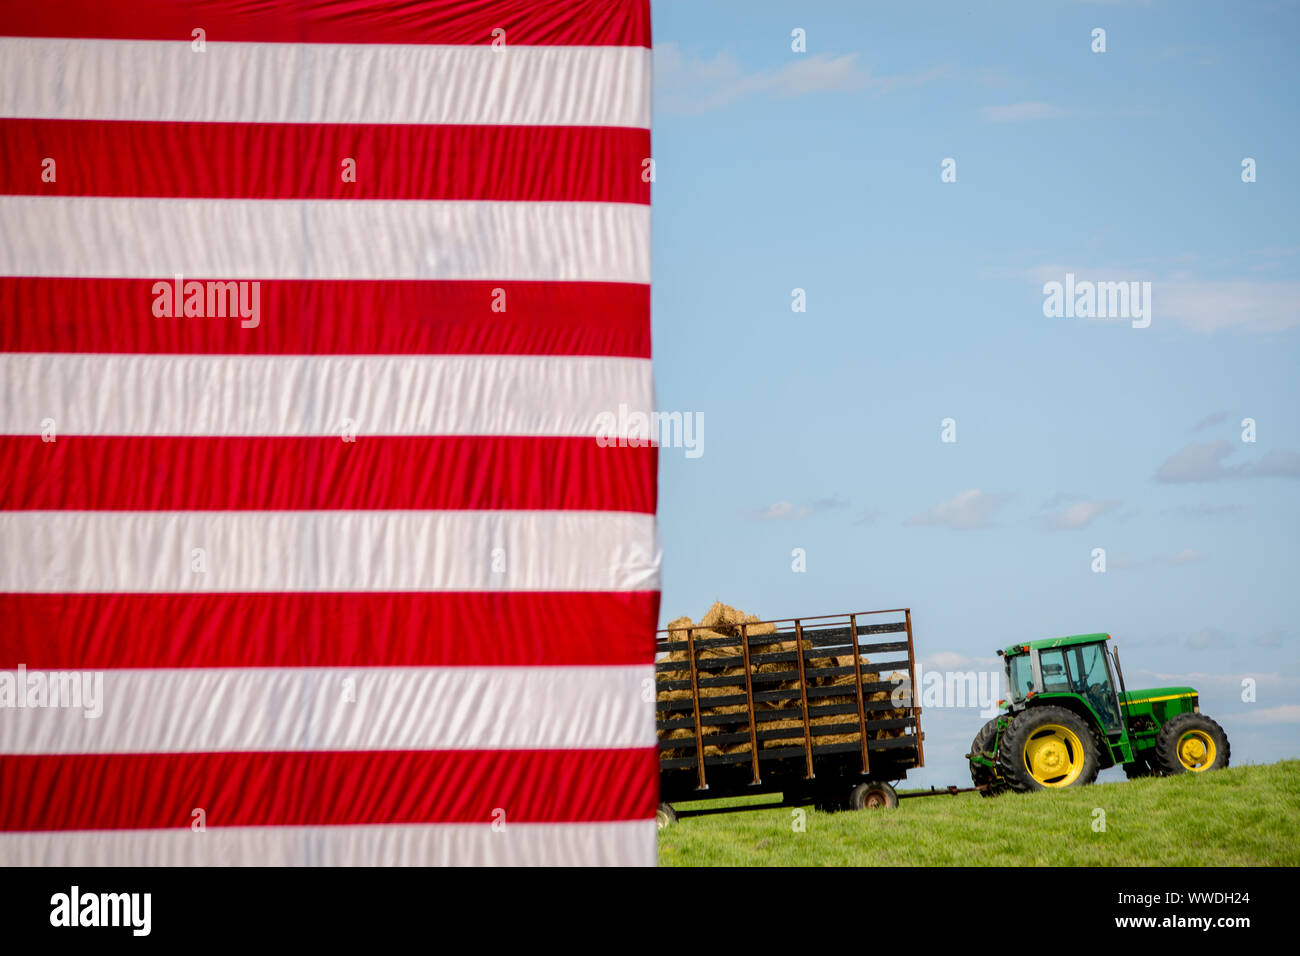 Ein John Deere Traktor mit Heu mit den Sternen und Streifen der US-Flagge in den Vordergrund geladen das Bühnenbild für das jährliche Grillfest durch Iowa Senator Tom Harkins gehostet werden. Stockfoto